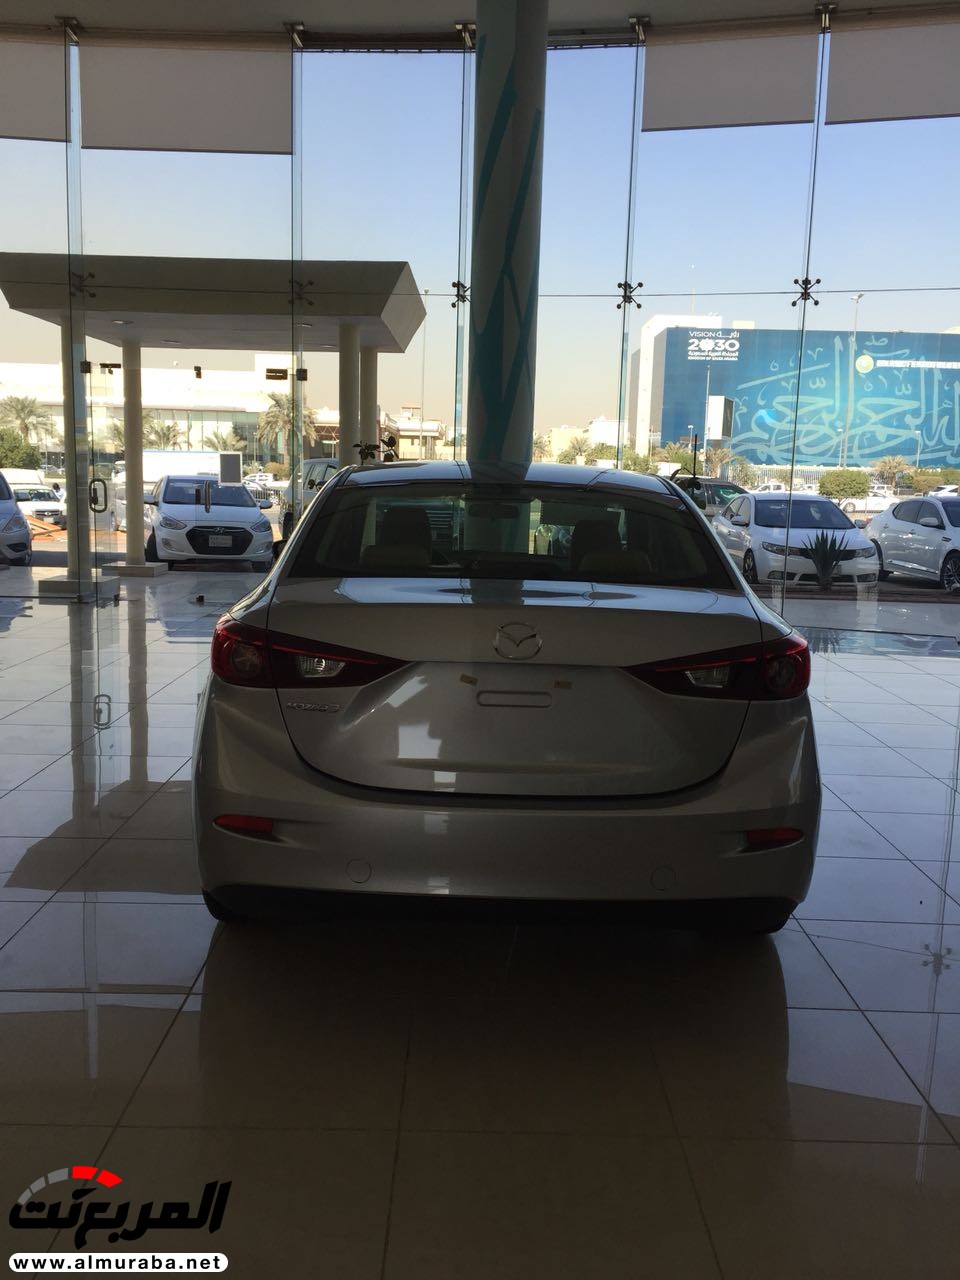 مازدا 3 2018 في السعودية لدى الحاج حسين علي رضا + الاسعار والمواصفات لجميع الفئات Mazda 3 1